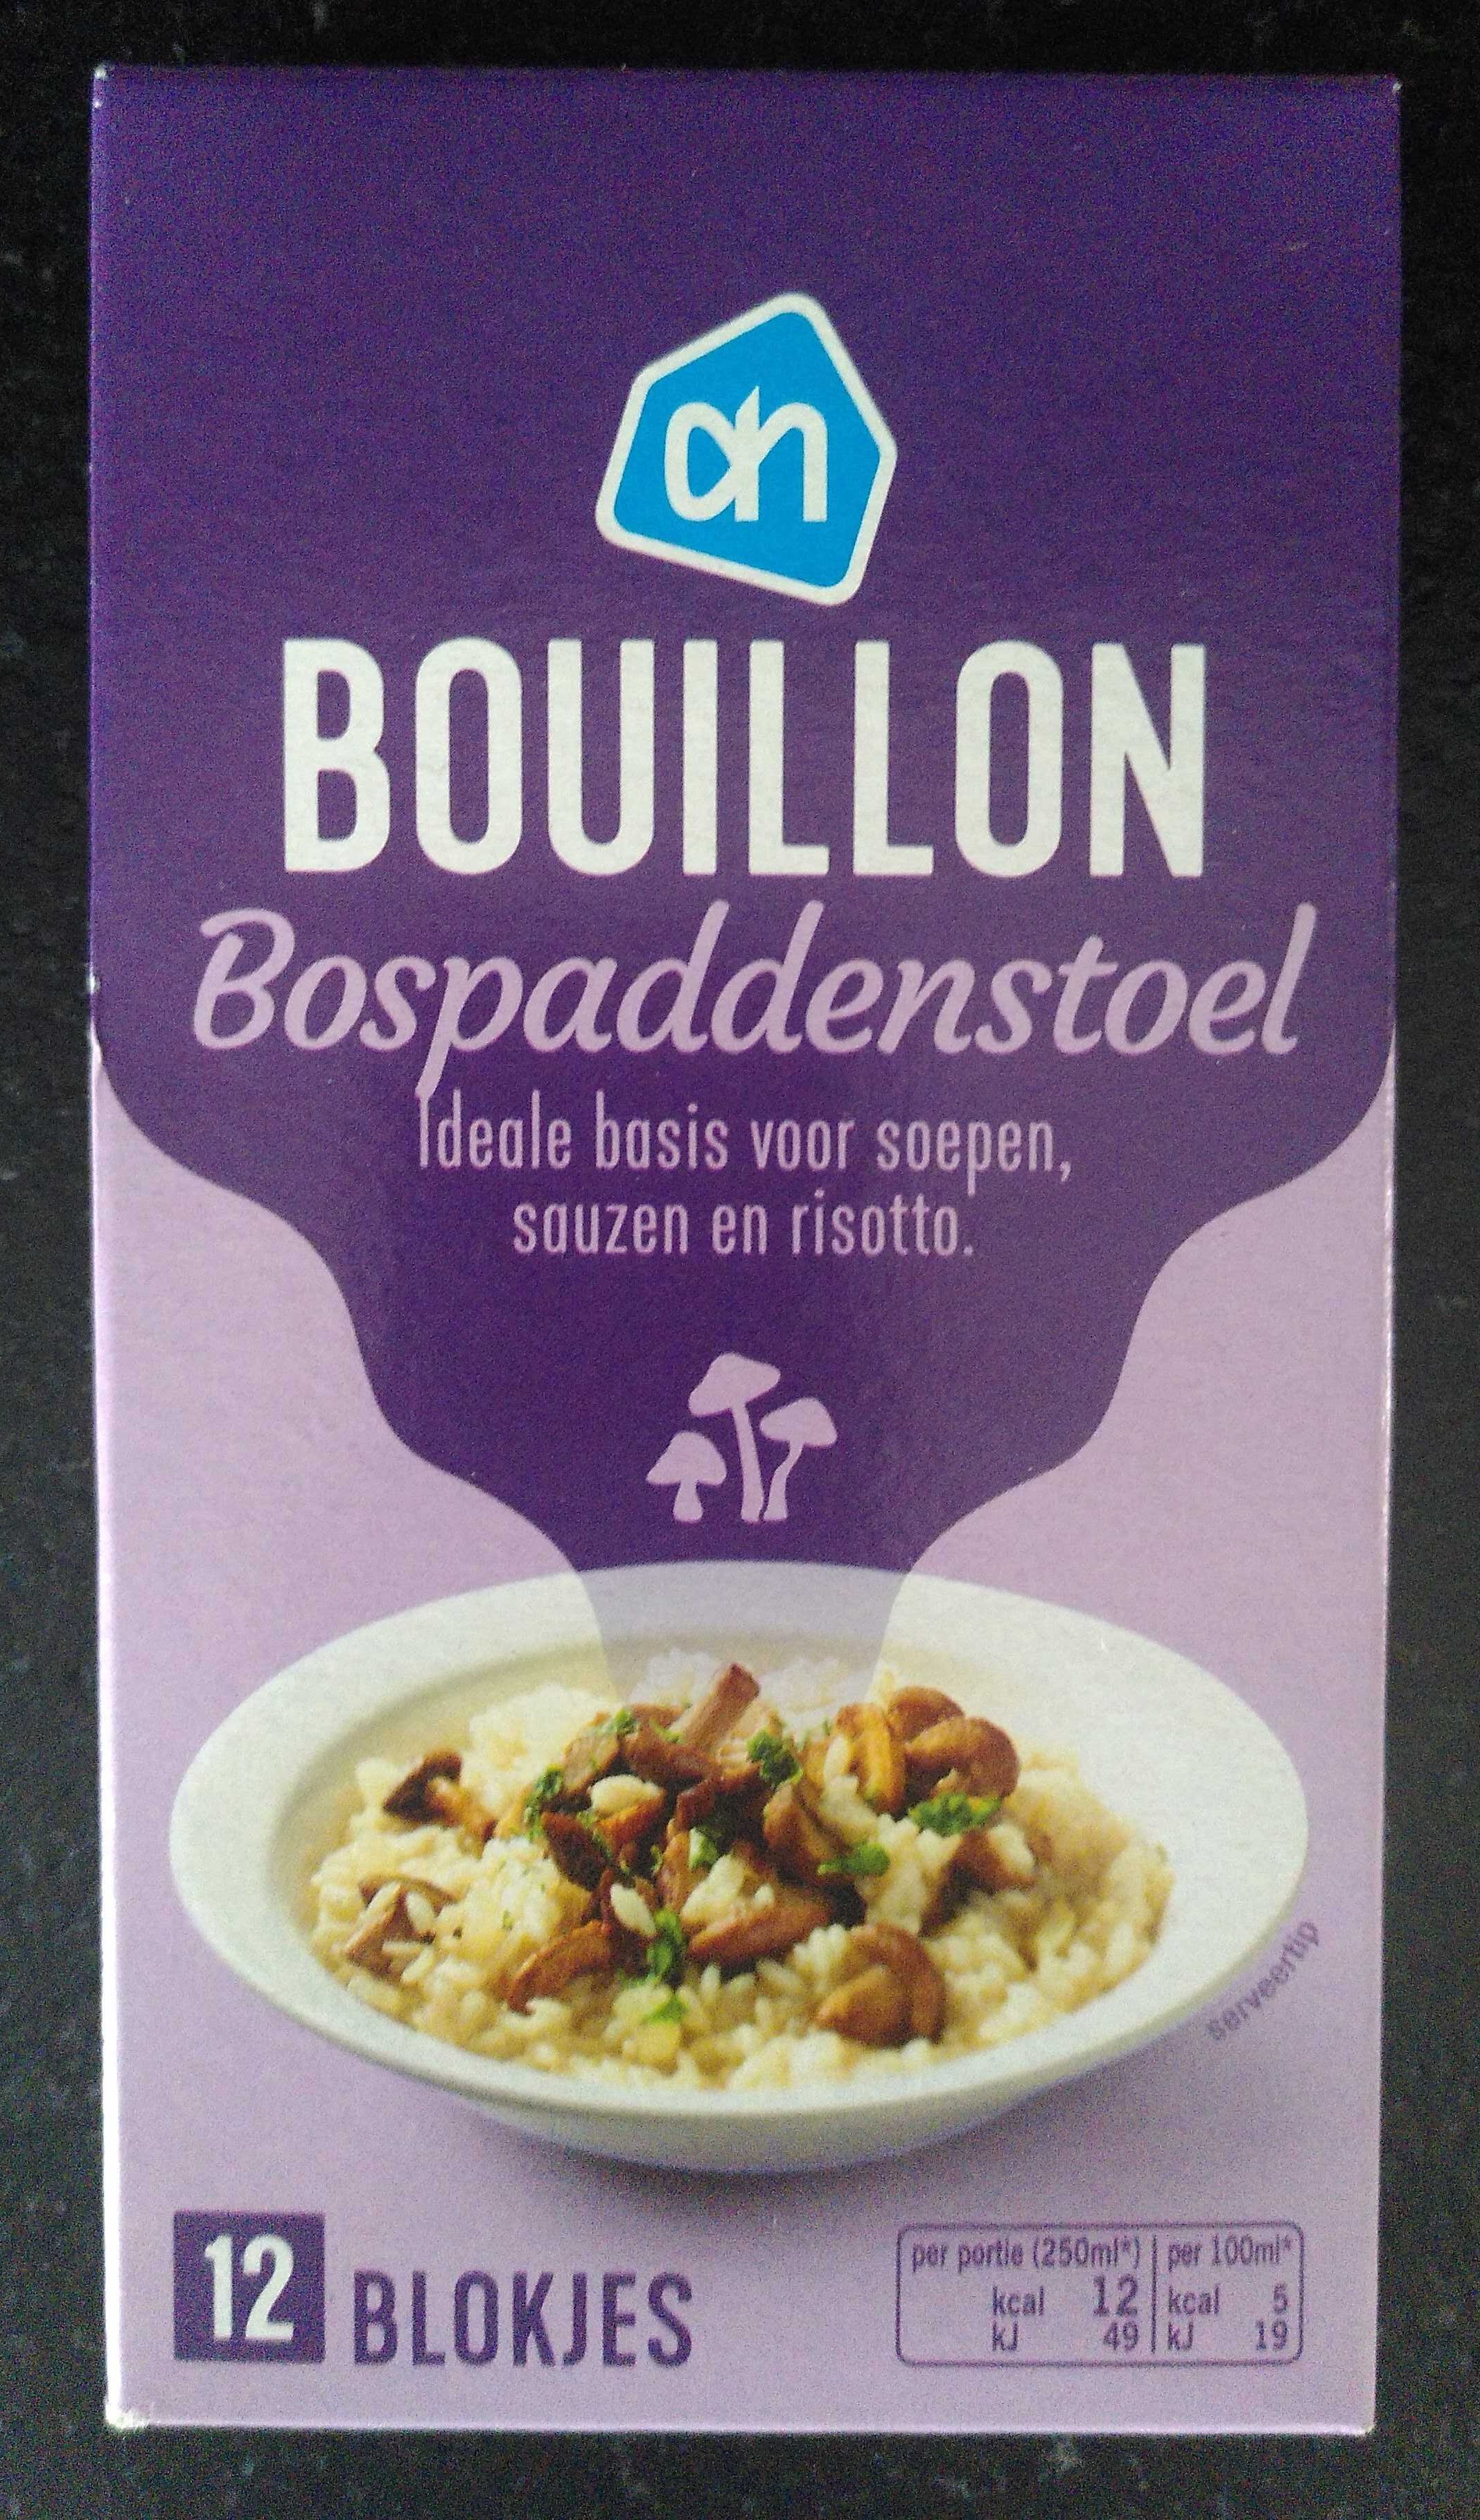 Bouillon Bospaddenstoel - Produkt - nl